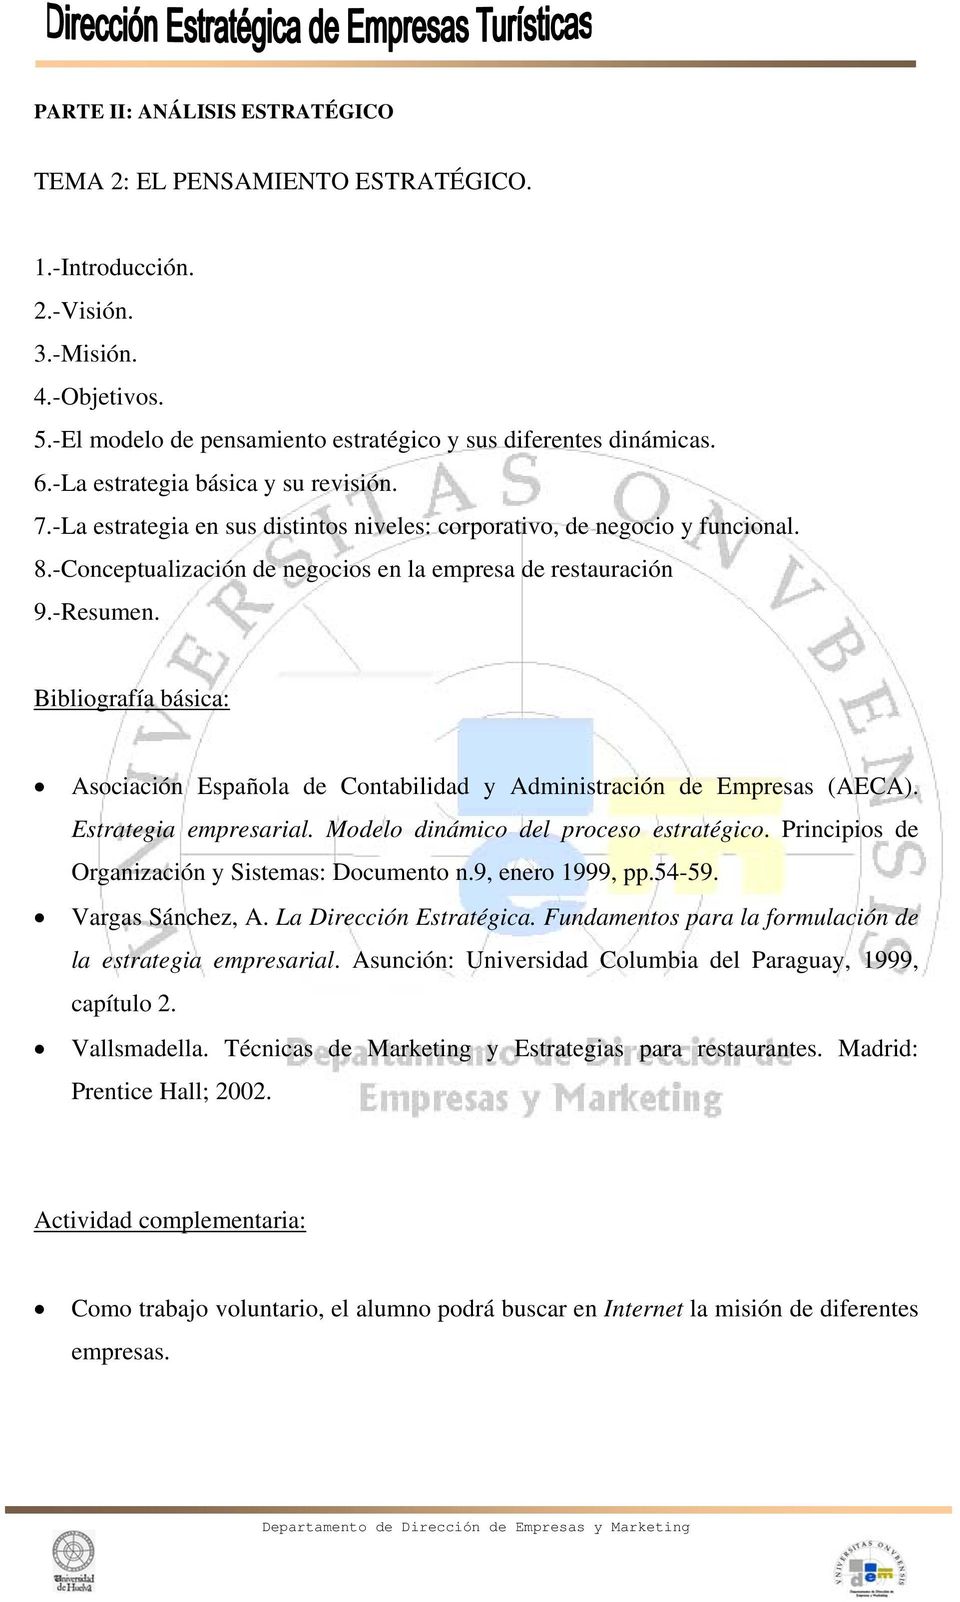 Asociación Española de Contabilidad y Administración de Empresas (AECA). Estrategia empresarial. Modelo dinámico del proceso estratégico. Principios de Organización y Sistemas: Documento n.